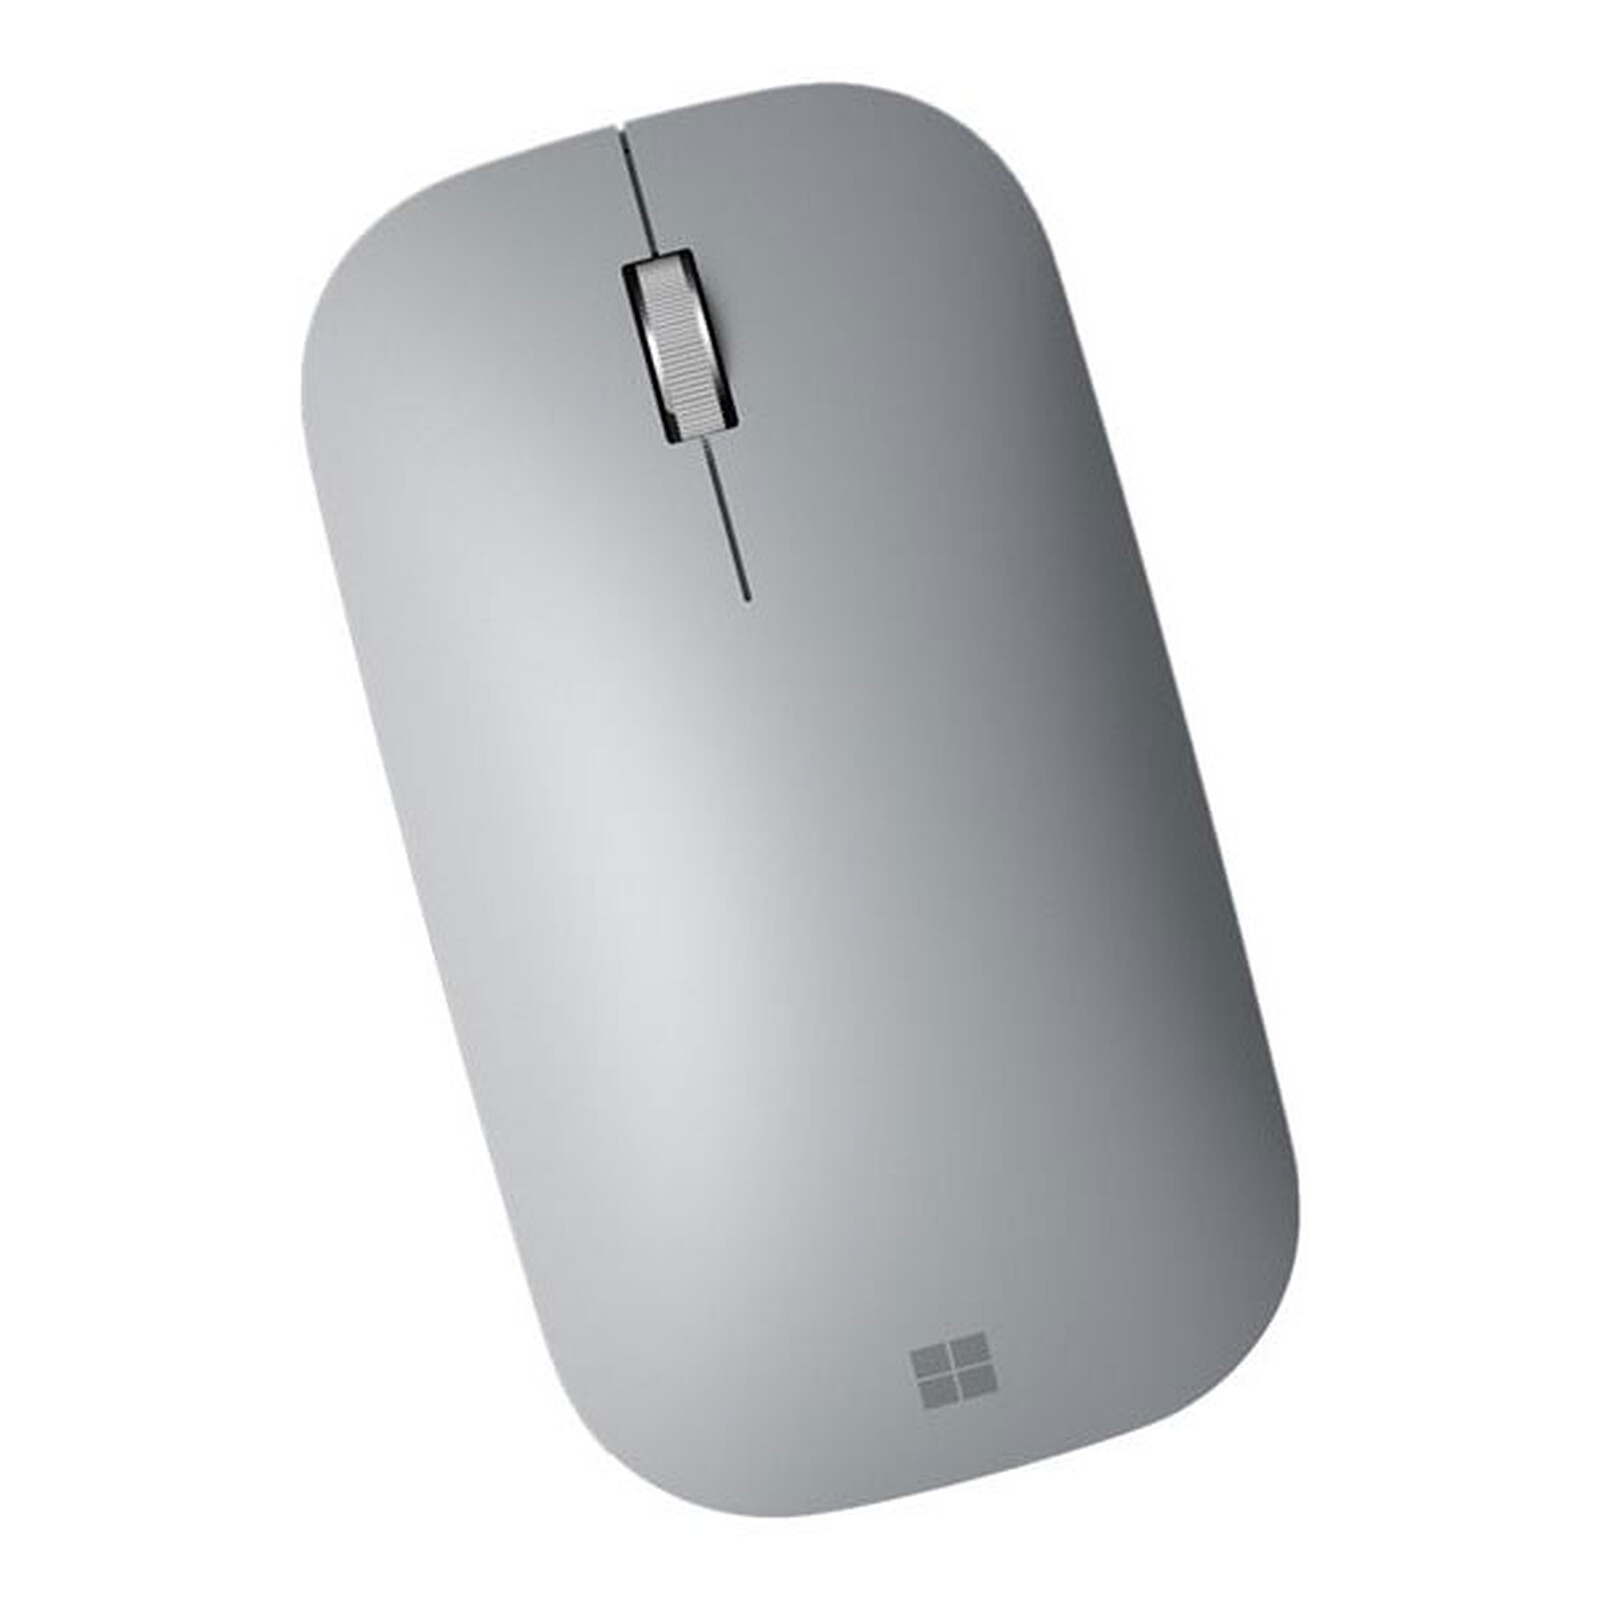 Microsoft Surface Mobile Mouse Platine - Souris PC - Garantie 3 ans LDLC